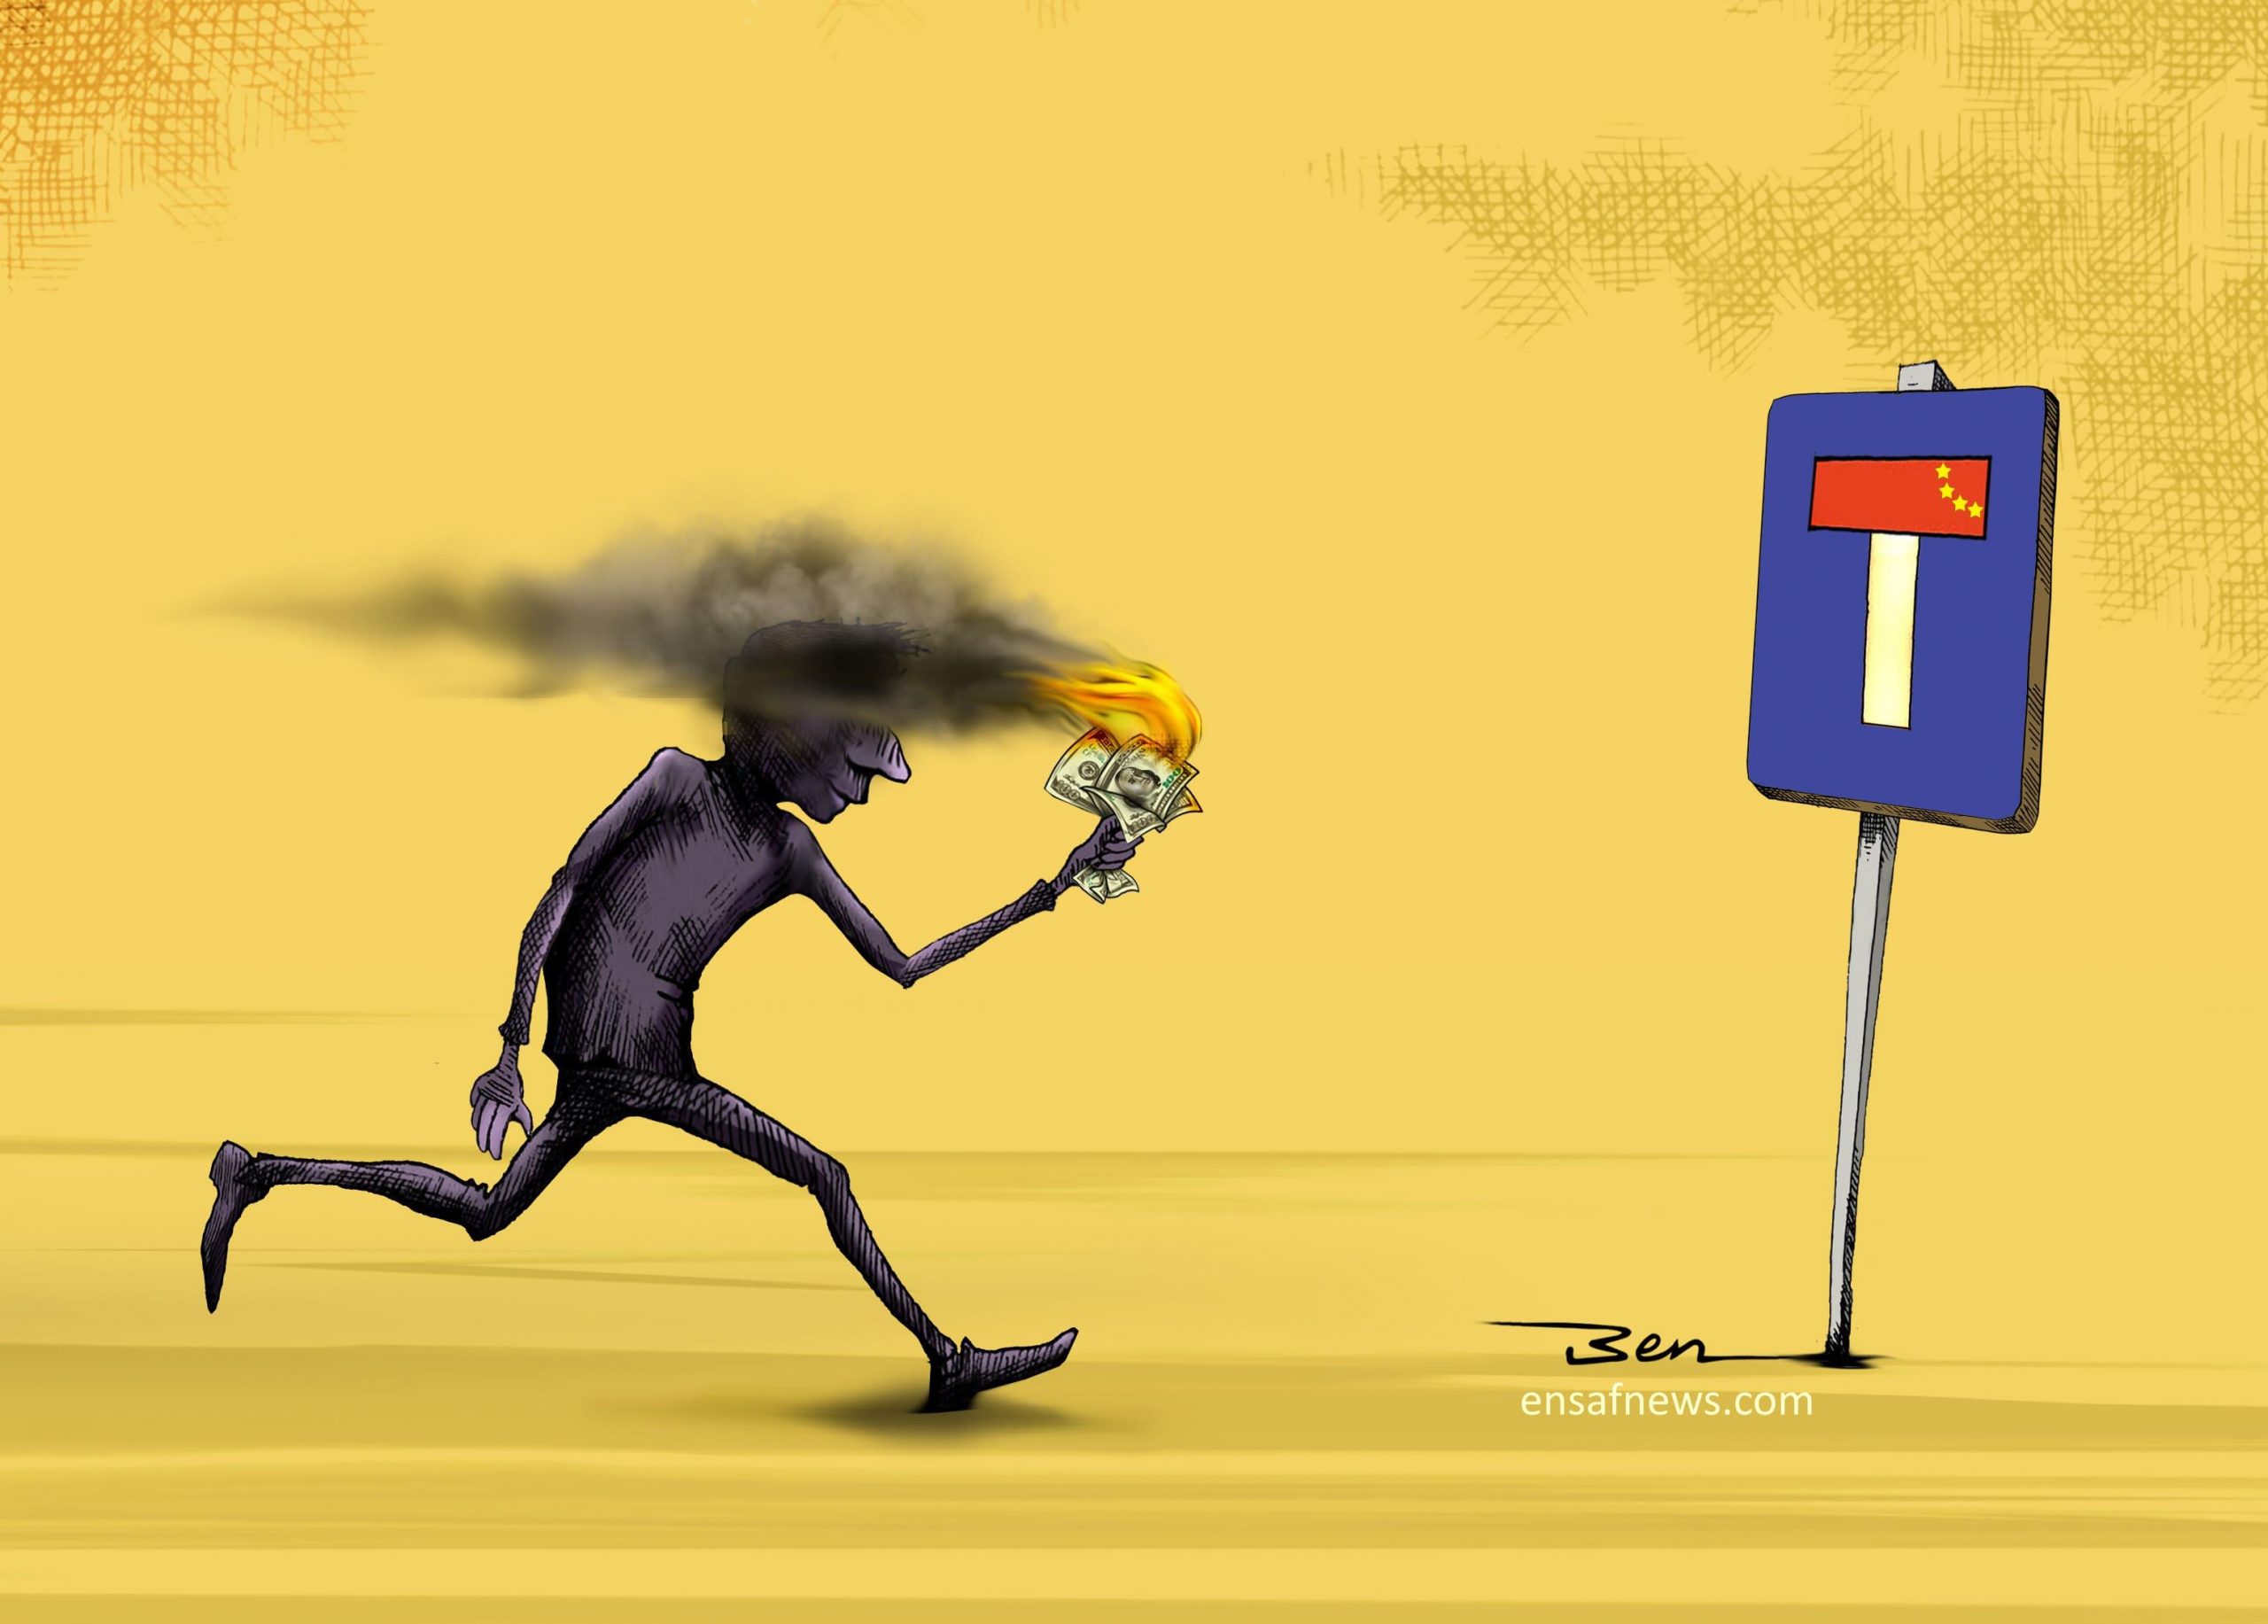 کارتون «به کجا چنین شتابان»، کاری از «بنیامین آل علی» کارتونیست انصاف نیوز